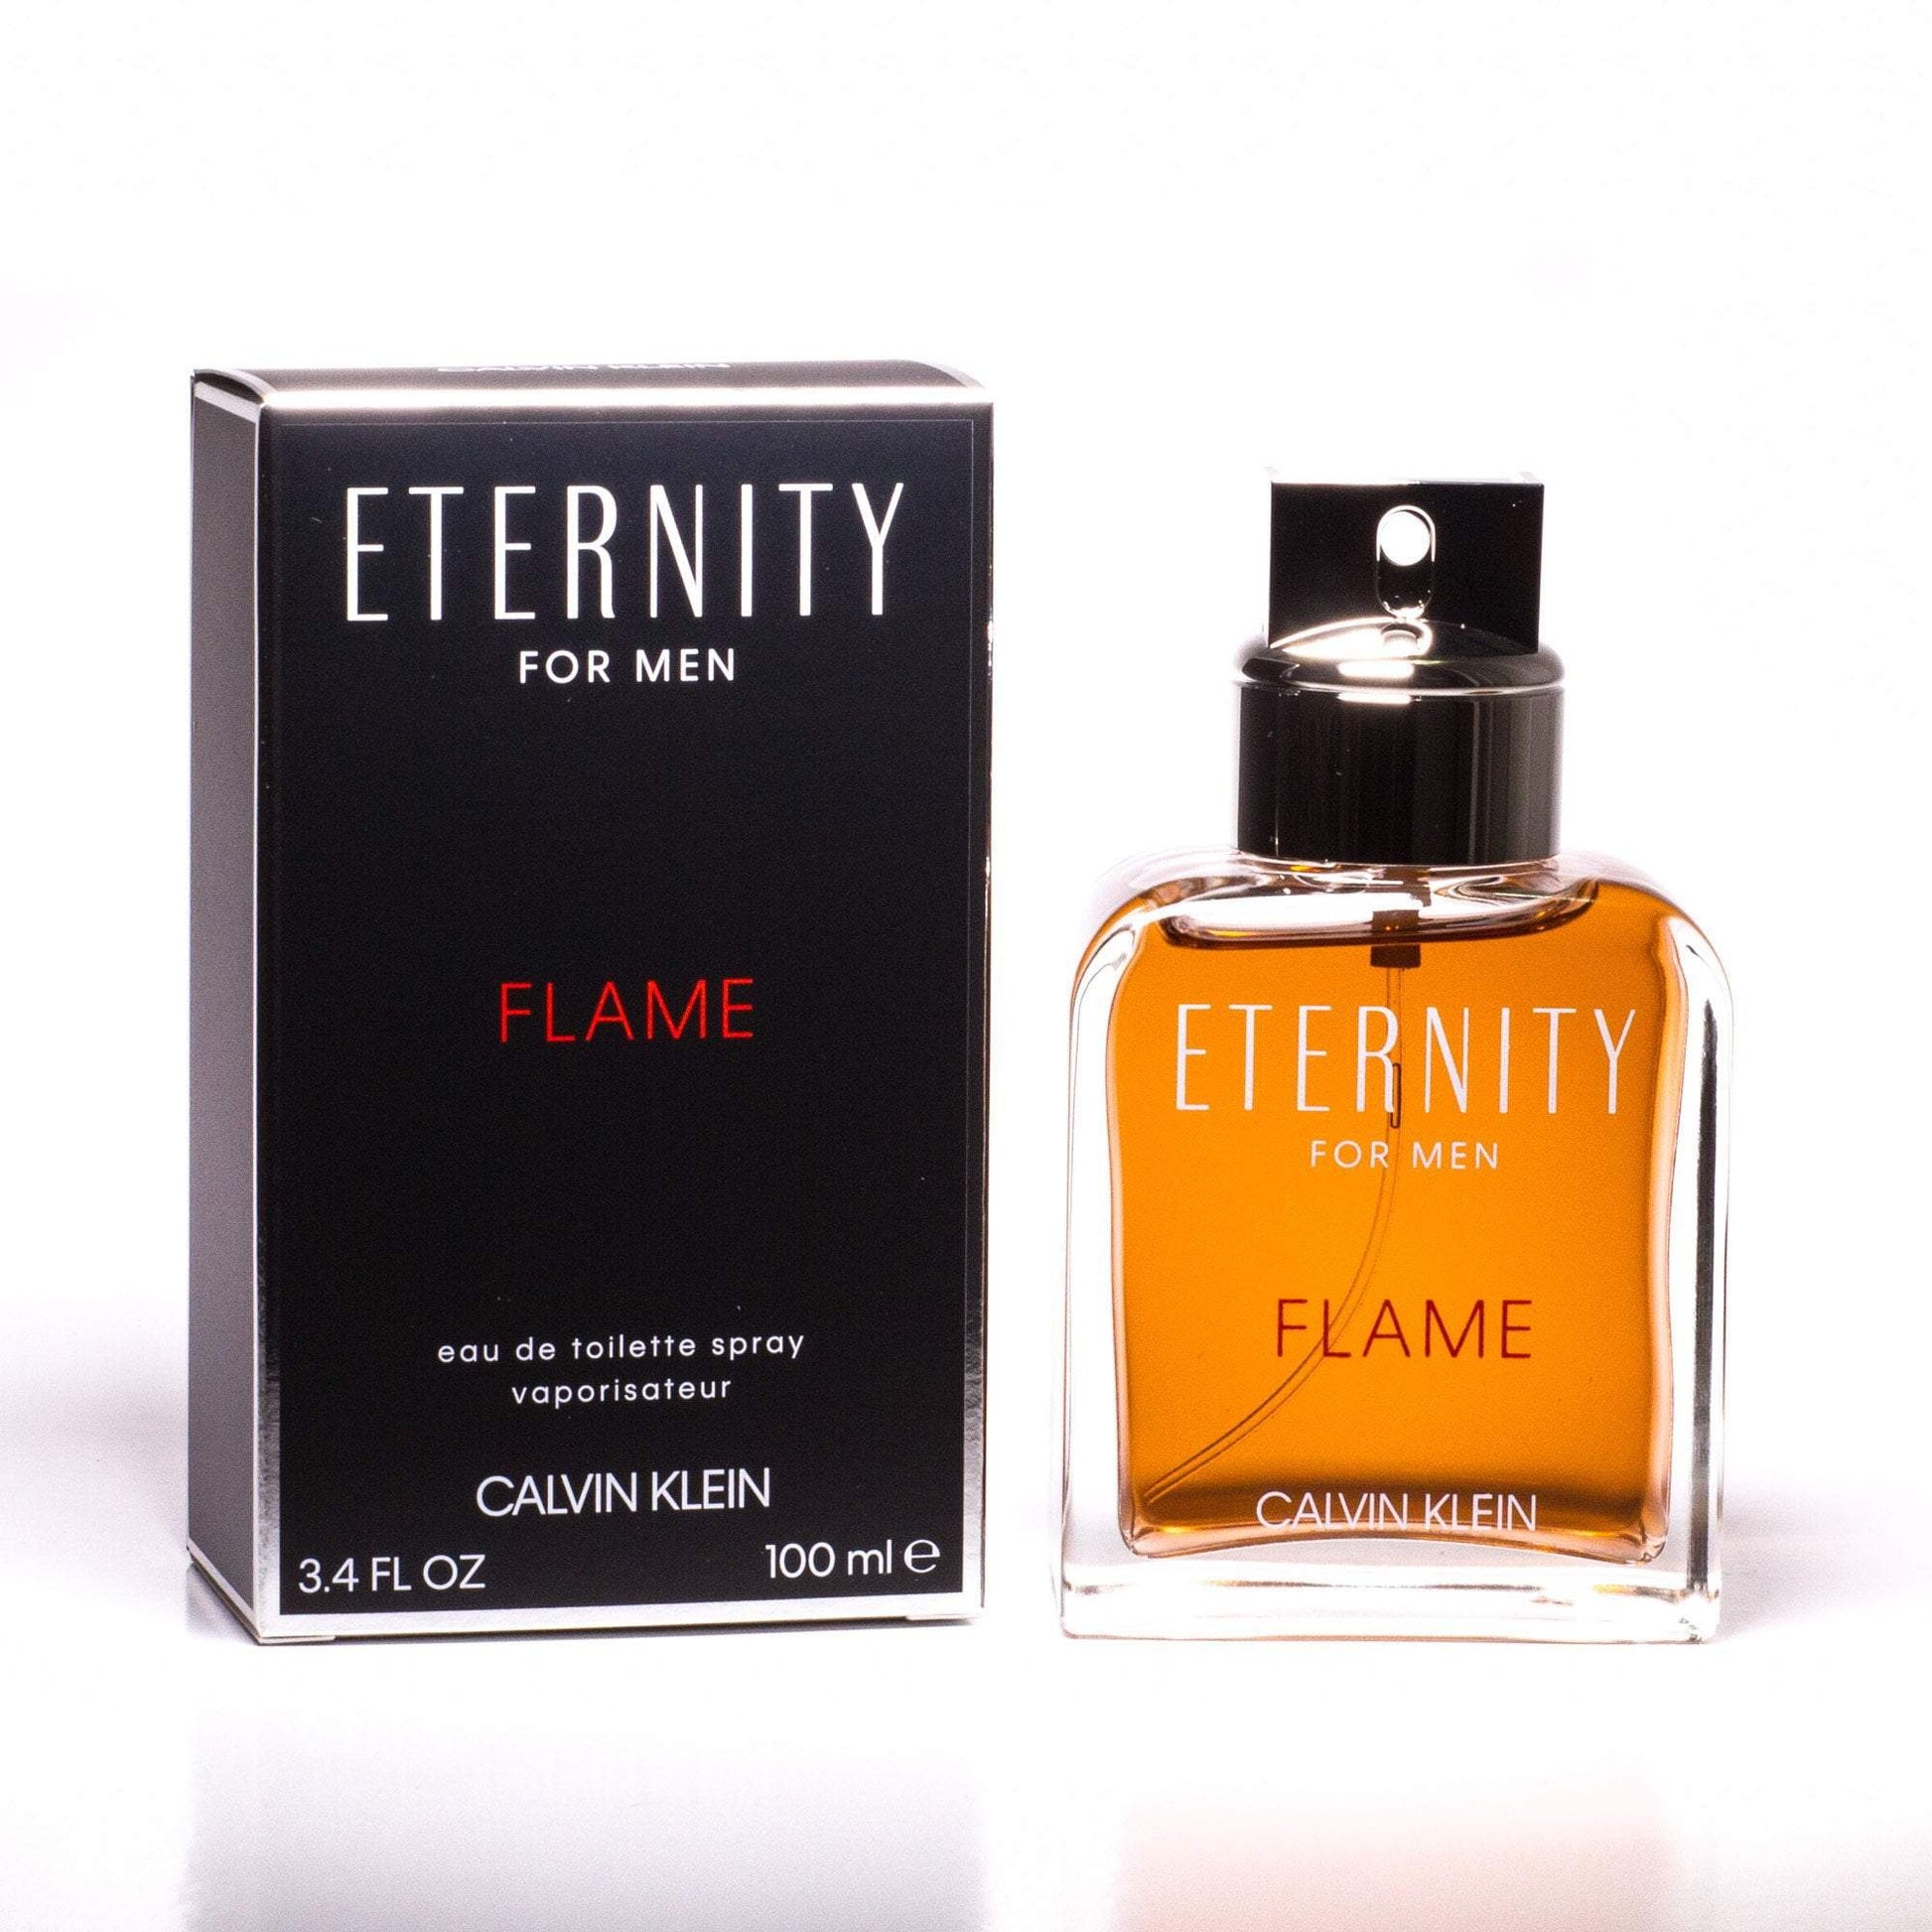 Flame Eau de Toilette Spray for Men by Calvin Klein 1.7 oz. Click to open in modal